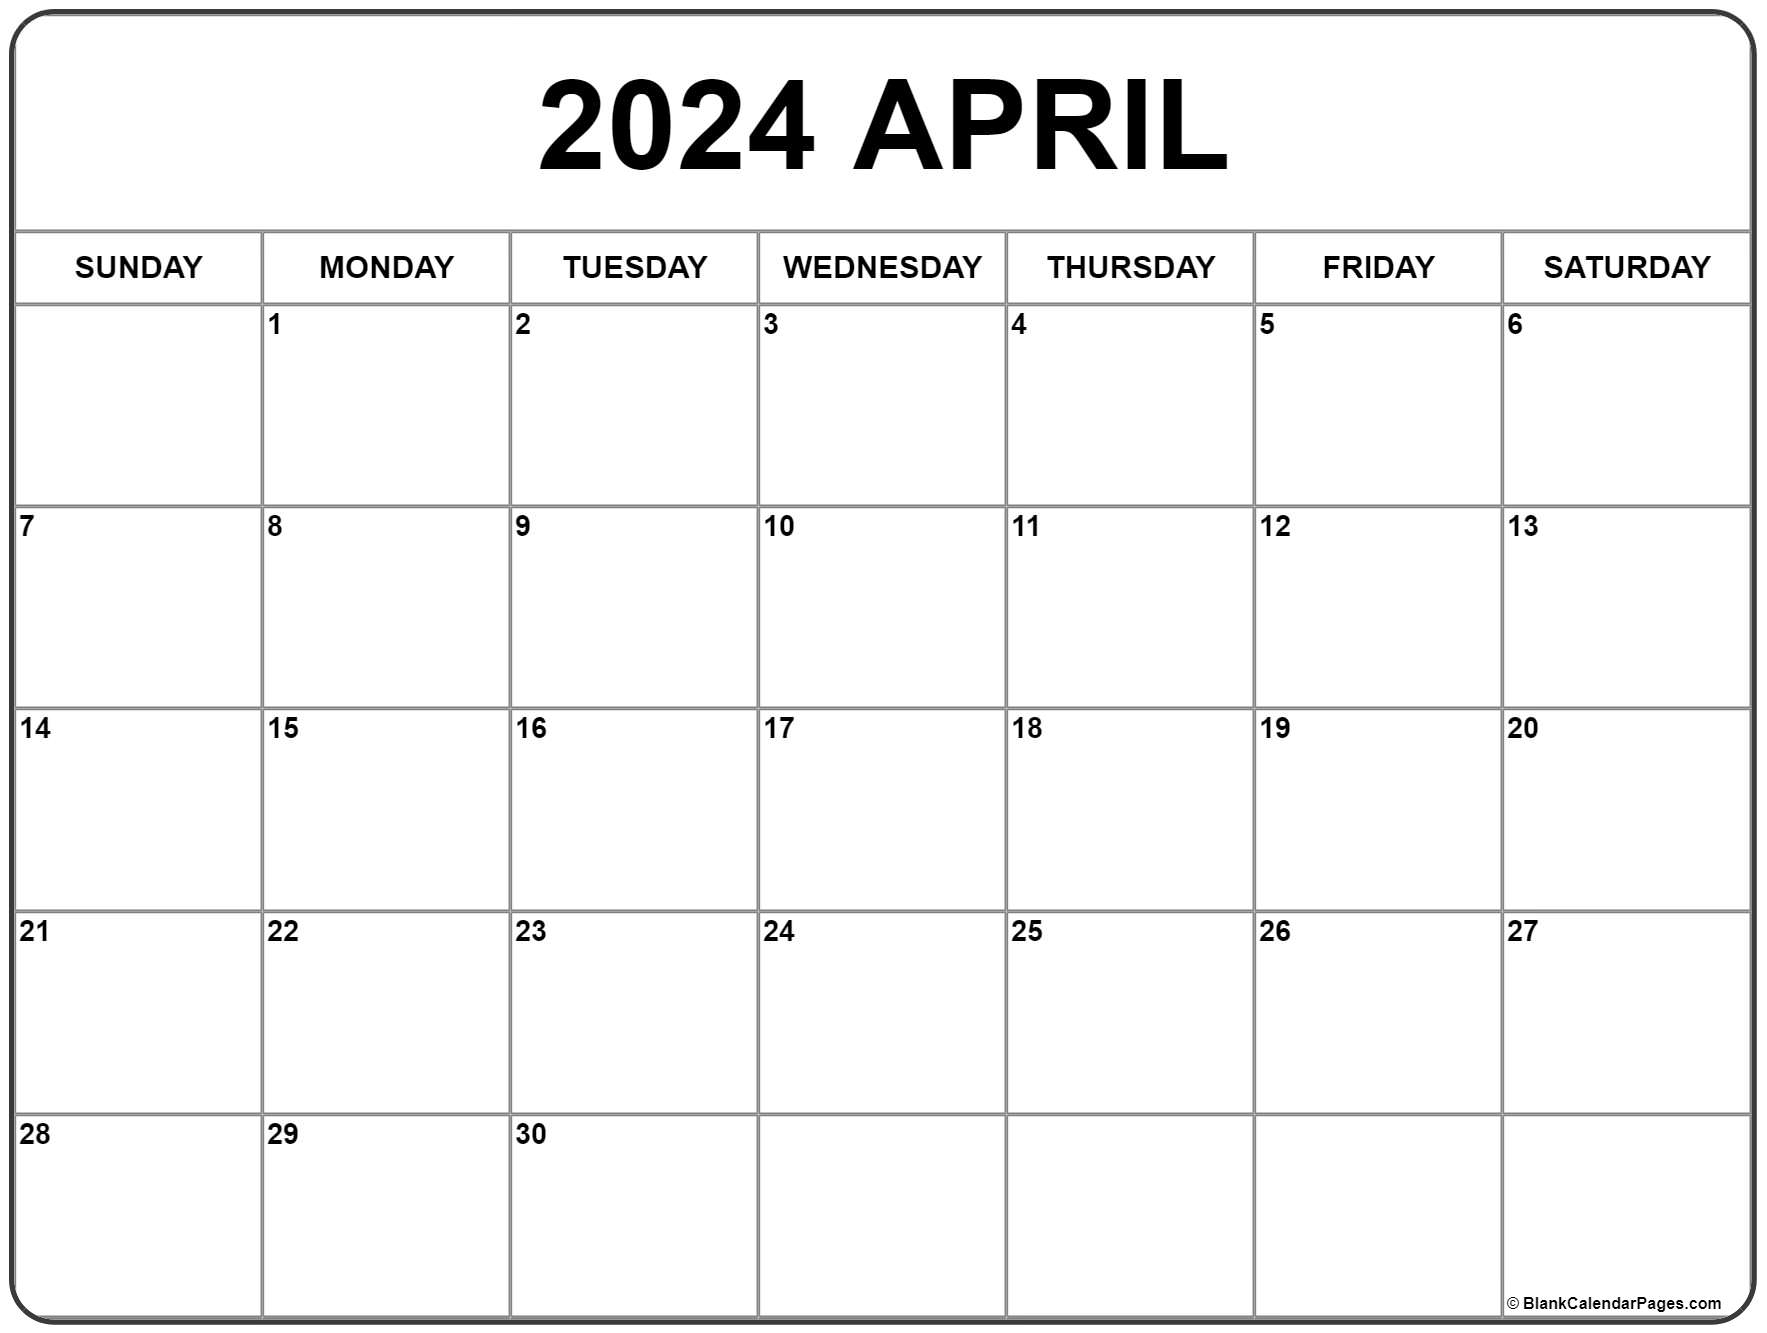 April 2024 Calendar | Free Printable Calendar for Blank Printable April 2024 Calendar